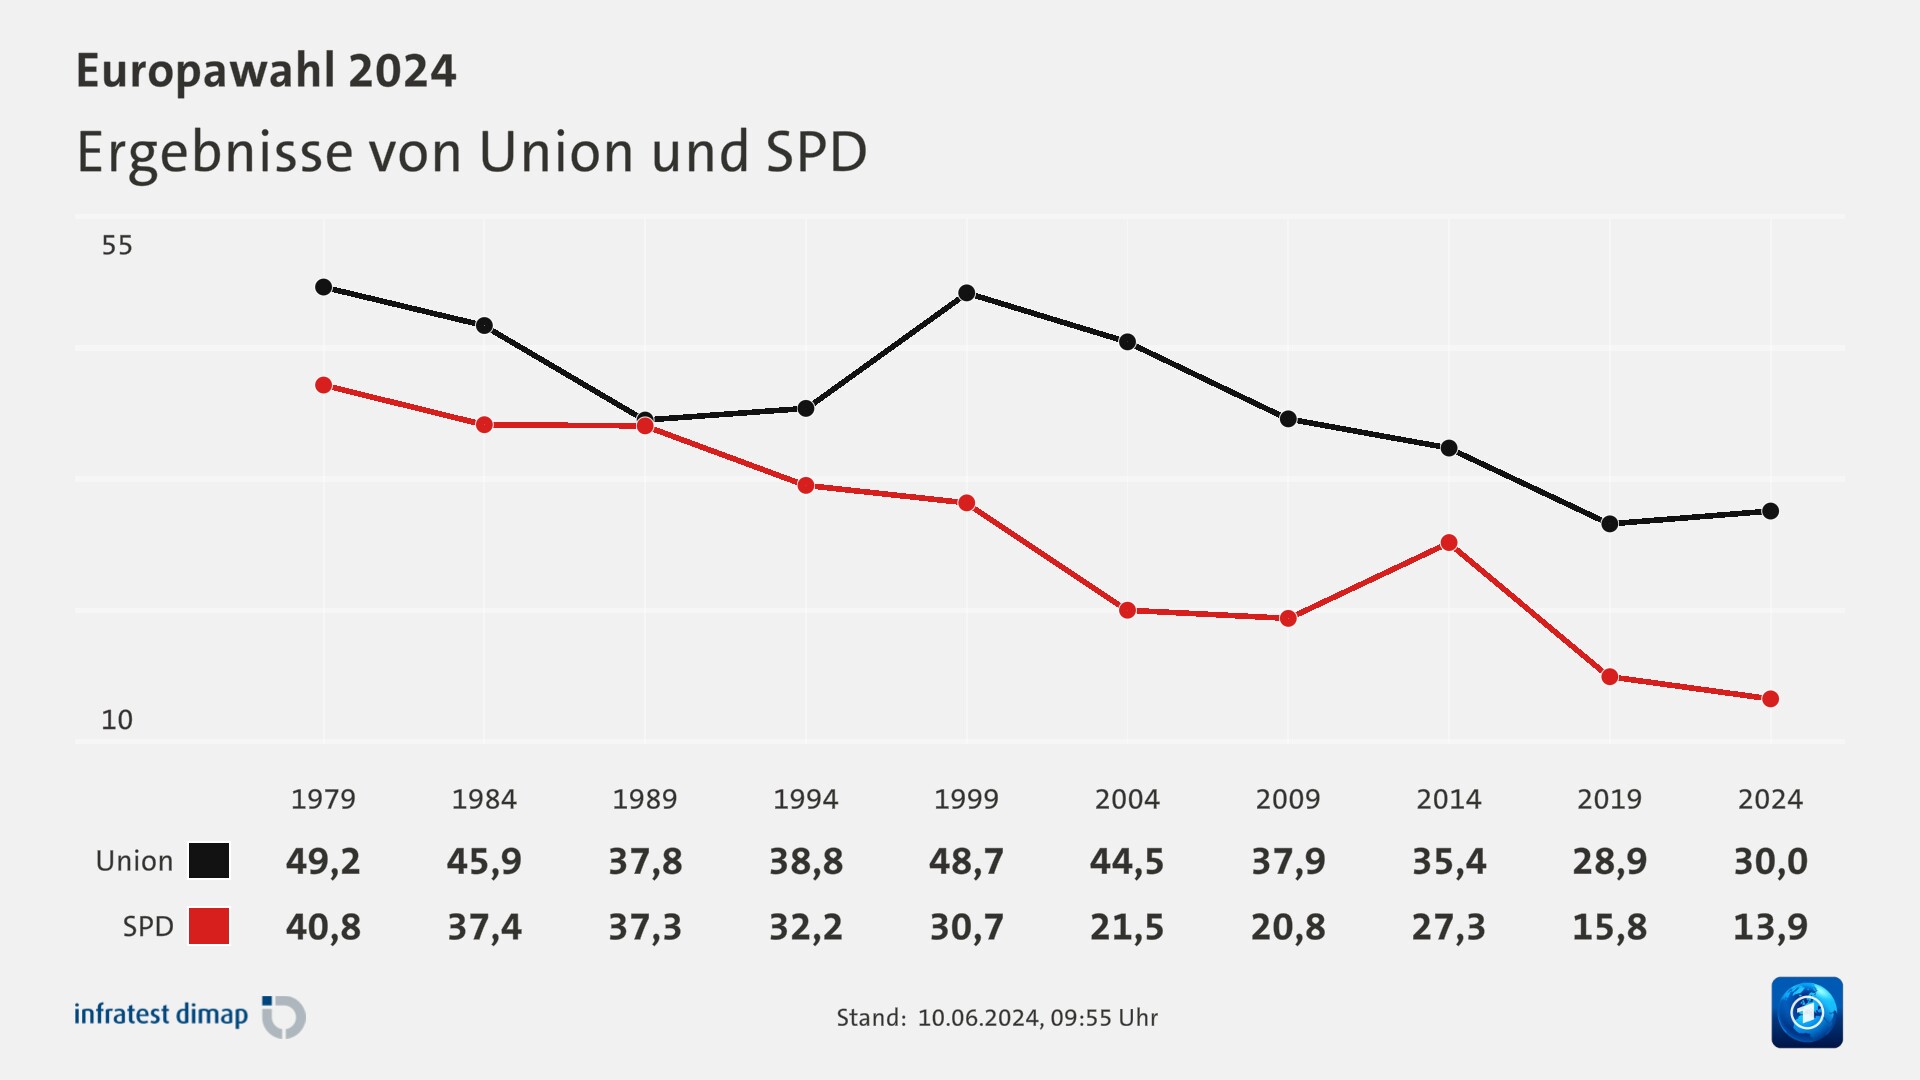 Ergebnisse von Union und SPD